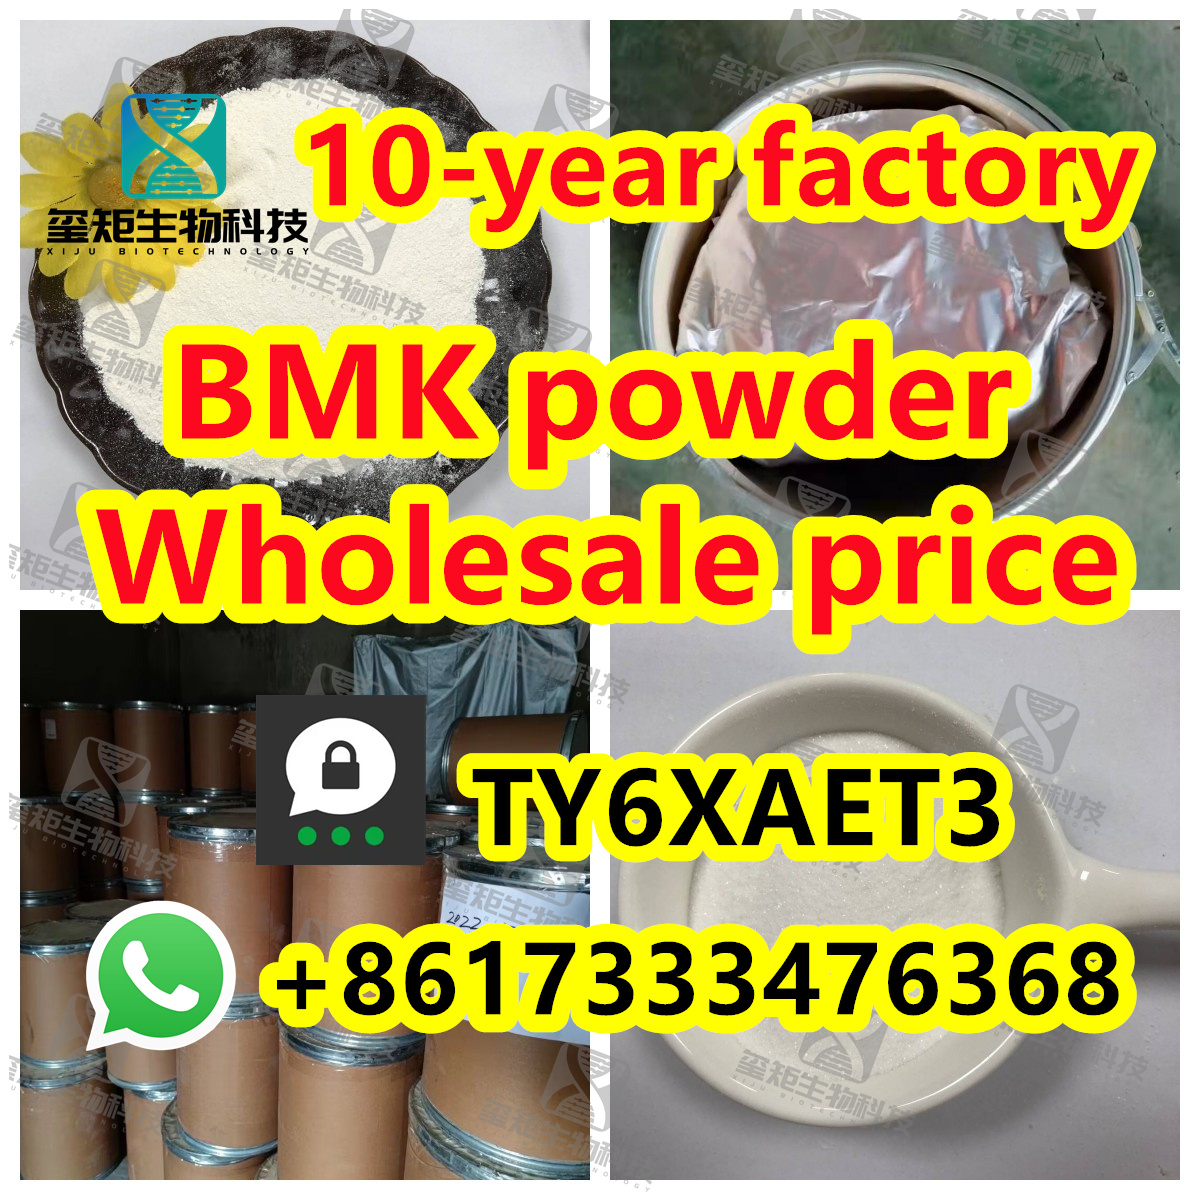 PMK powder 28578-16-7/PMK oil,Threema: TY6XAET3 Whatsapp/Tel: +86 17333476368 Foxmail/Skype: deer@wh-xiju.com